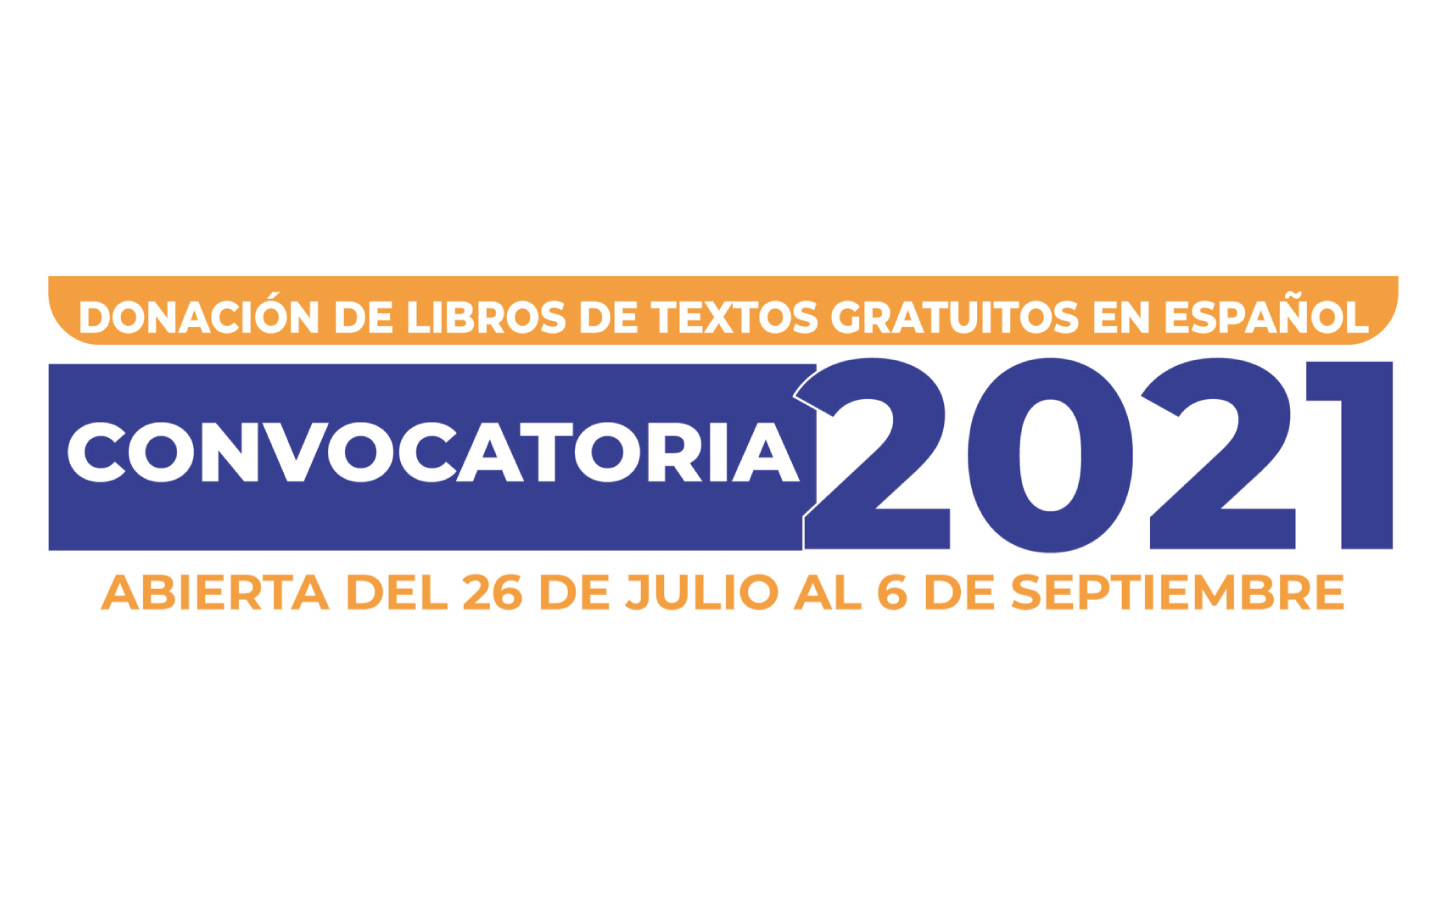 Donación de libros de textos gratuitos en español